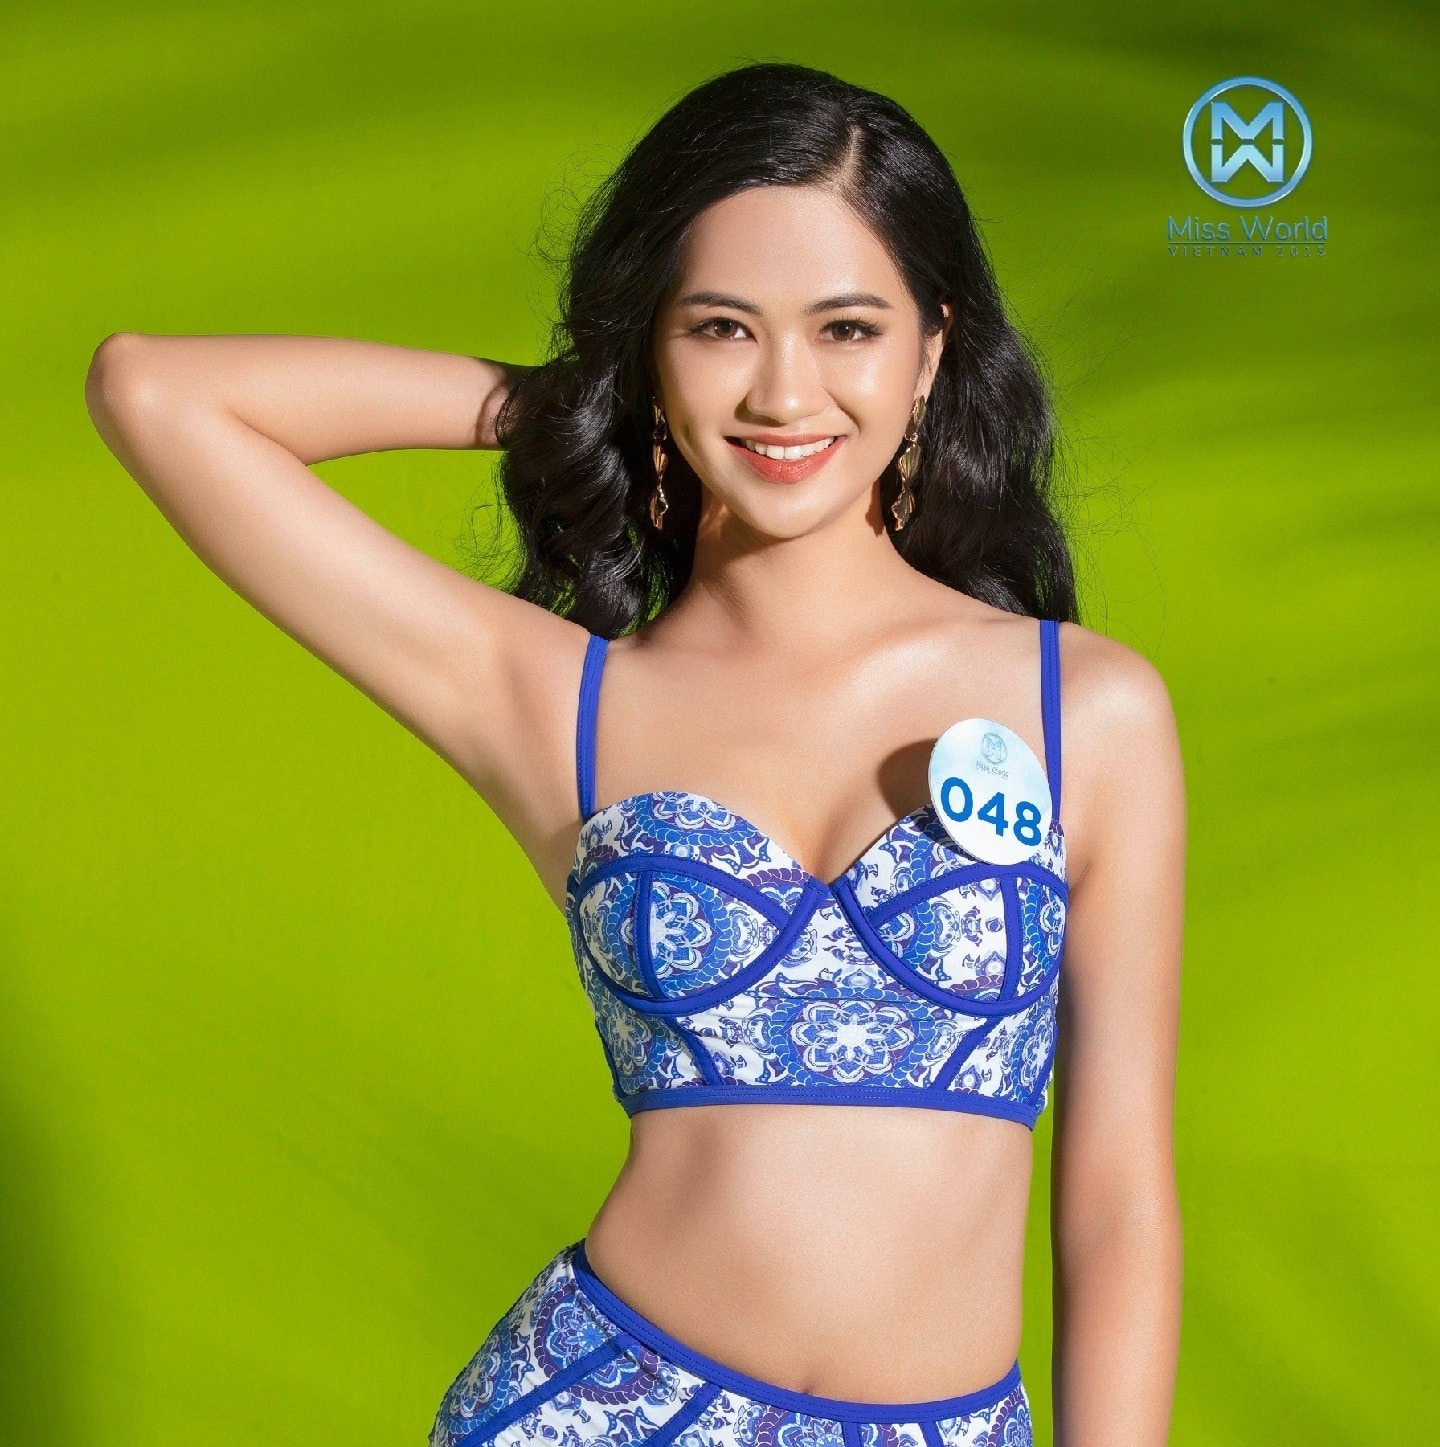 Cận cảnh nhan sắc người đẹp Hoa hậu Việt Nam dẫn bản tin VTV - Ảnh 2.